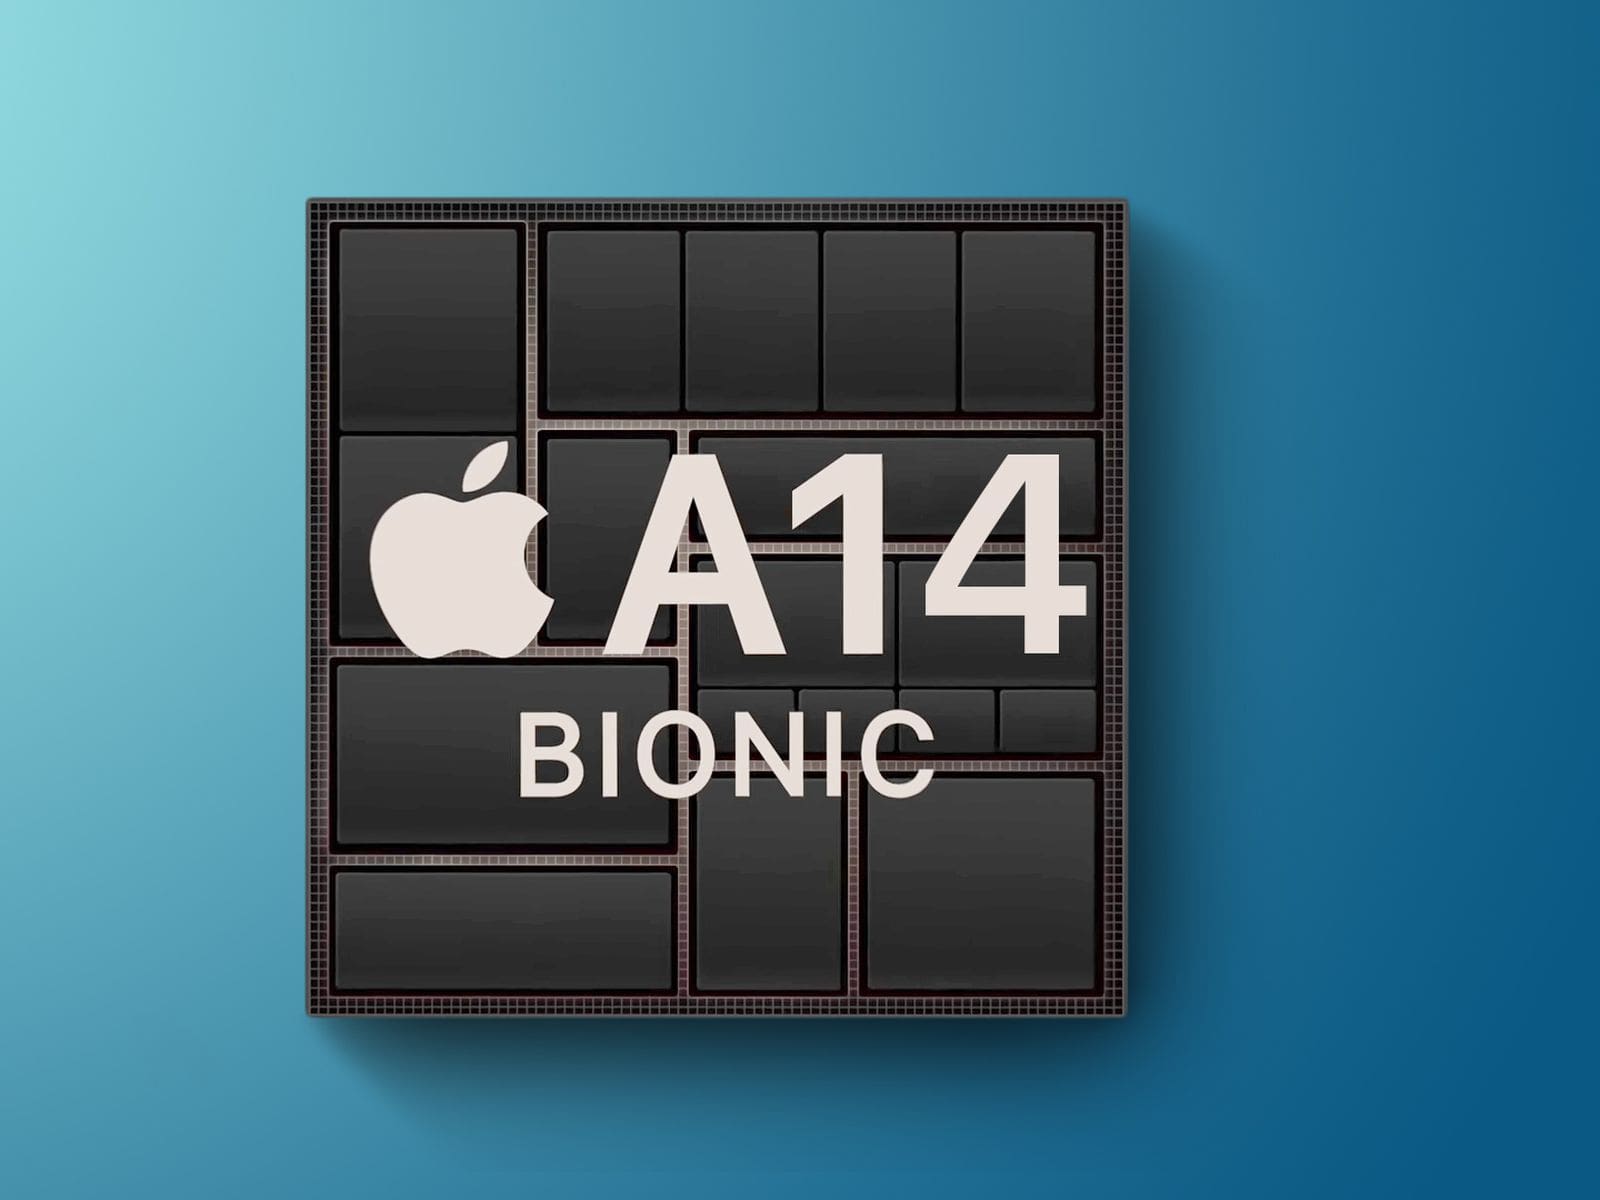 پردازنده اپل A14 بیونیک